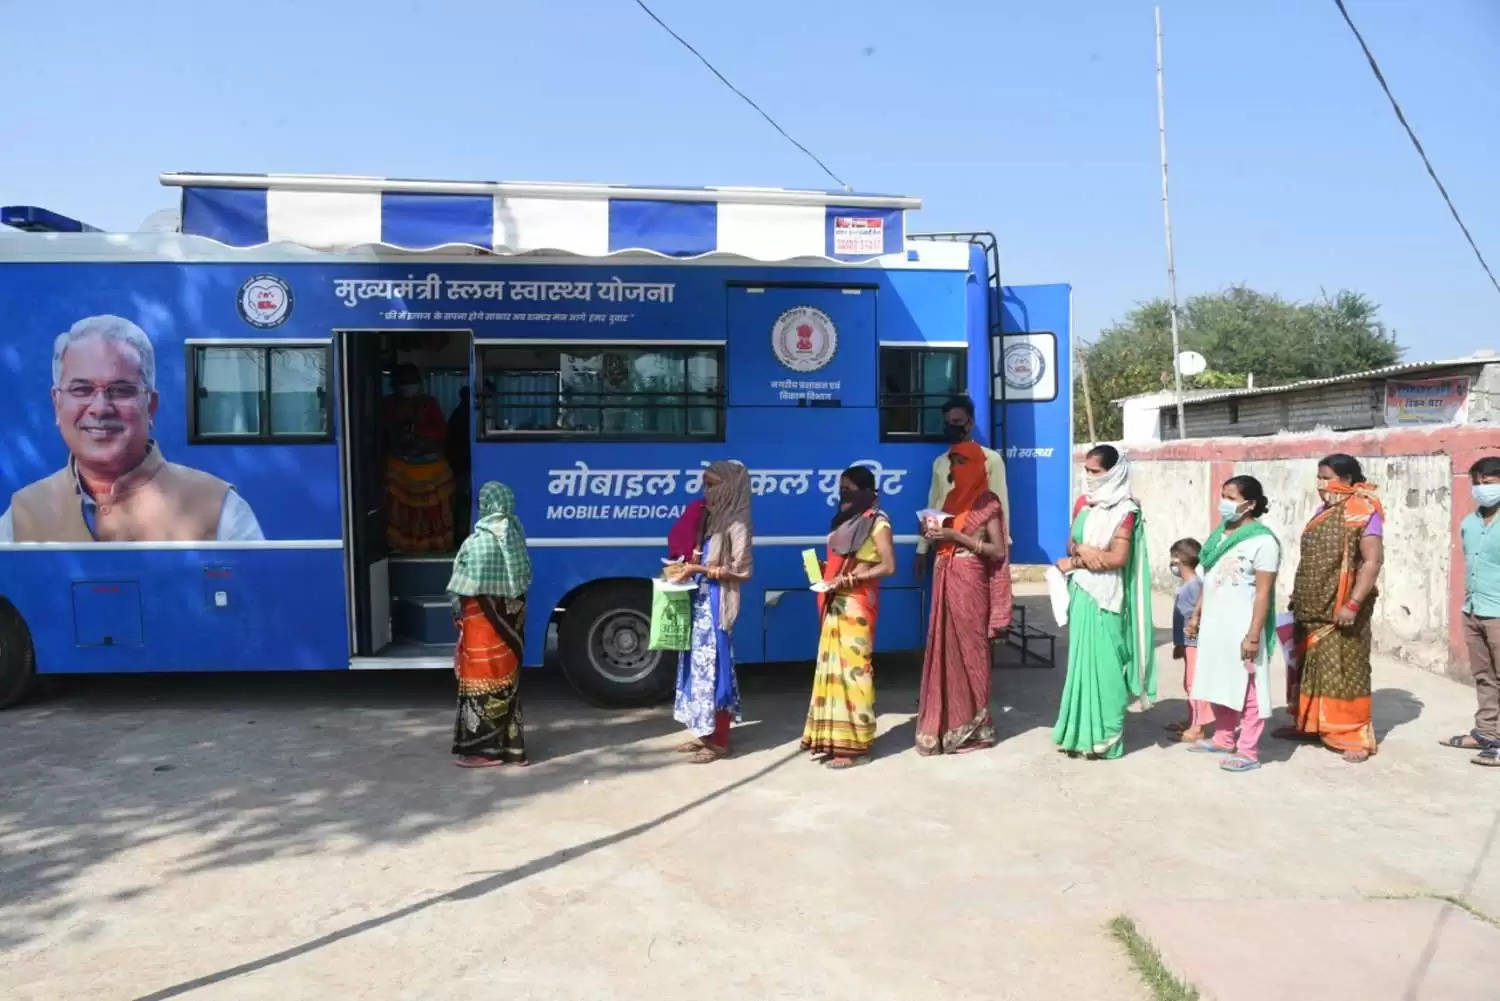  रायपुर: मुख्यमंत्री दाई-दीदी क्लीनिक : 1.47 लाख से ज्यादा महिलाओं का हुआ निःशुल्क इलाज